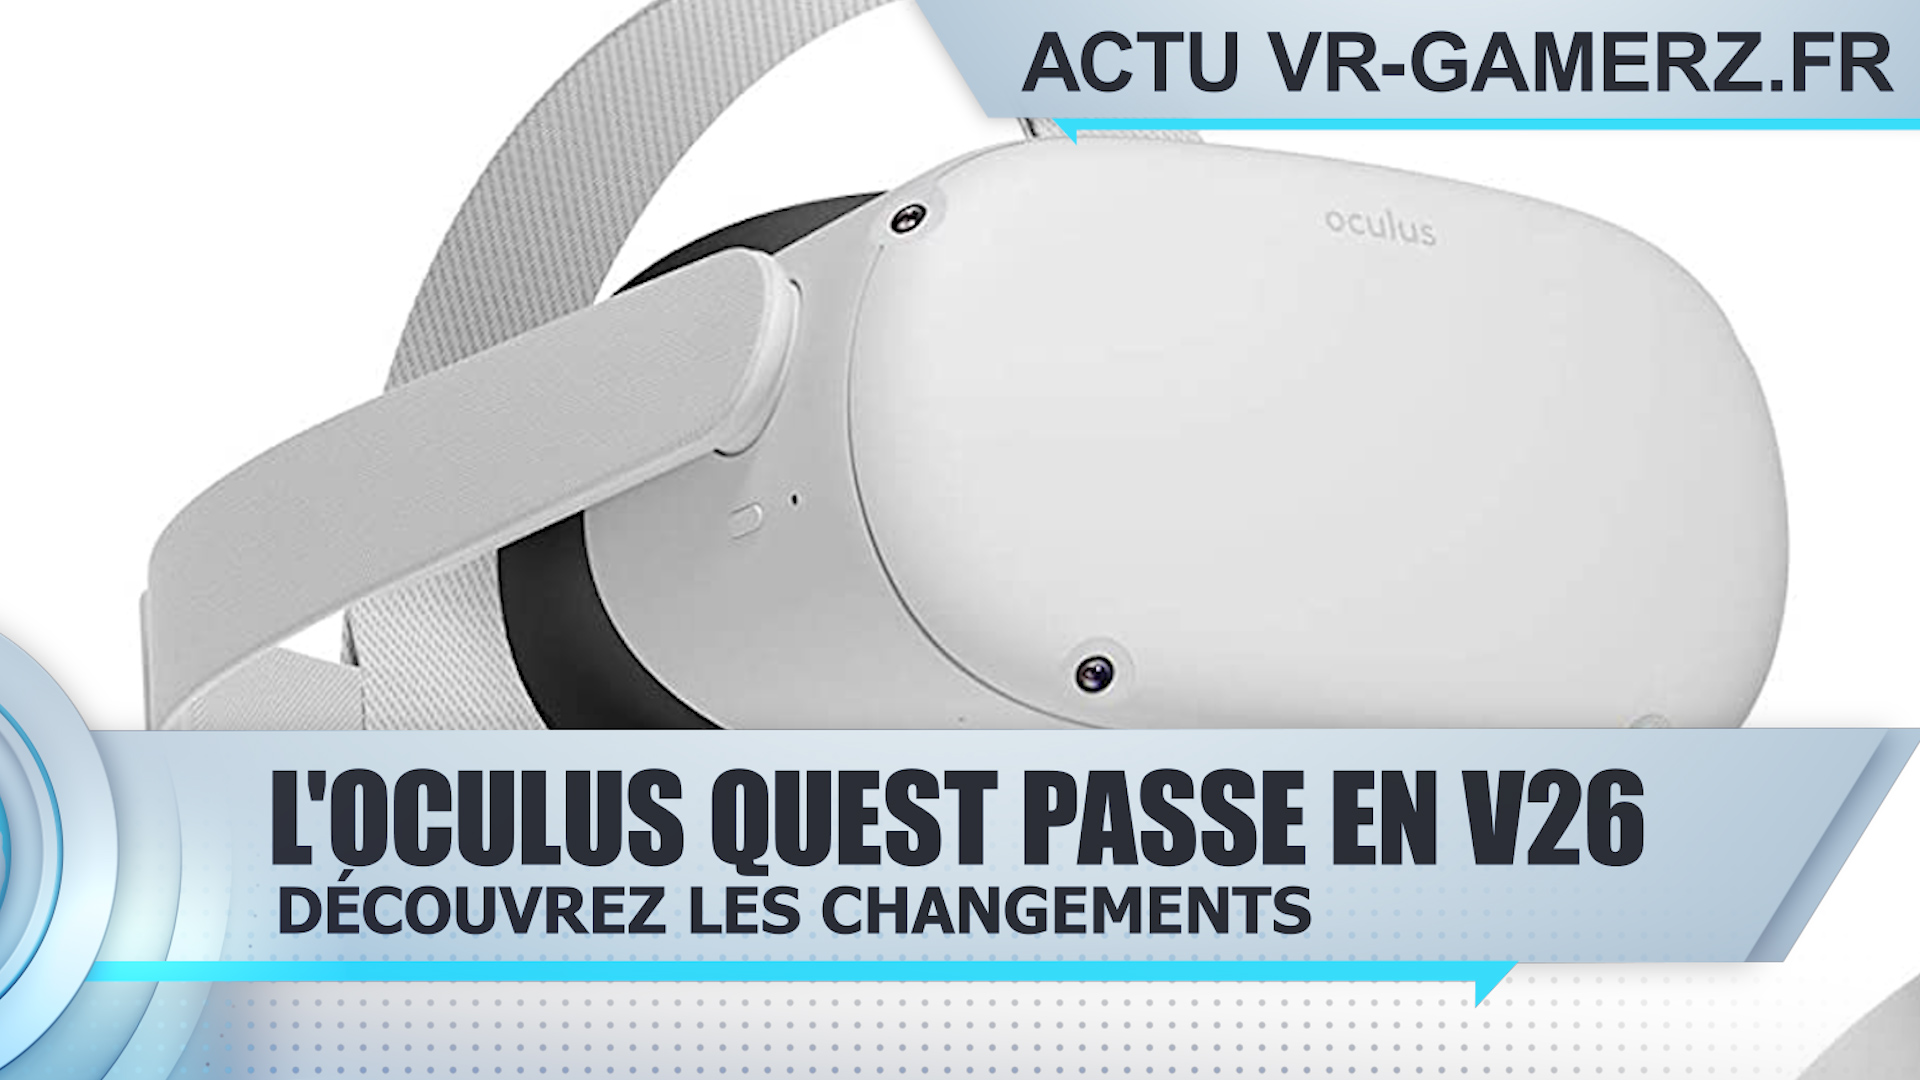 Oculus quest : La version 26 est disponible !